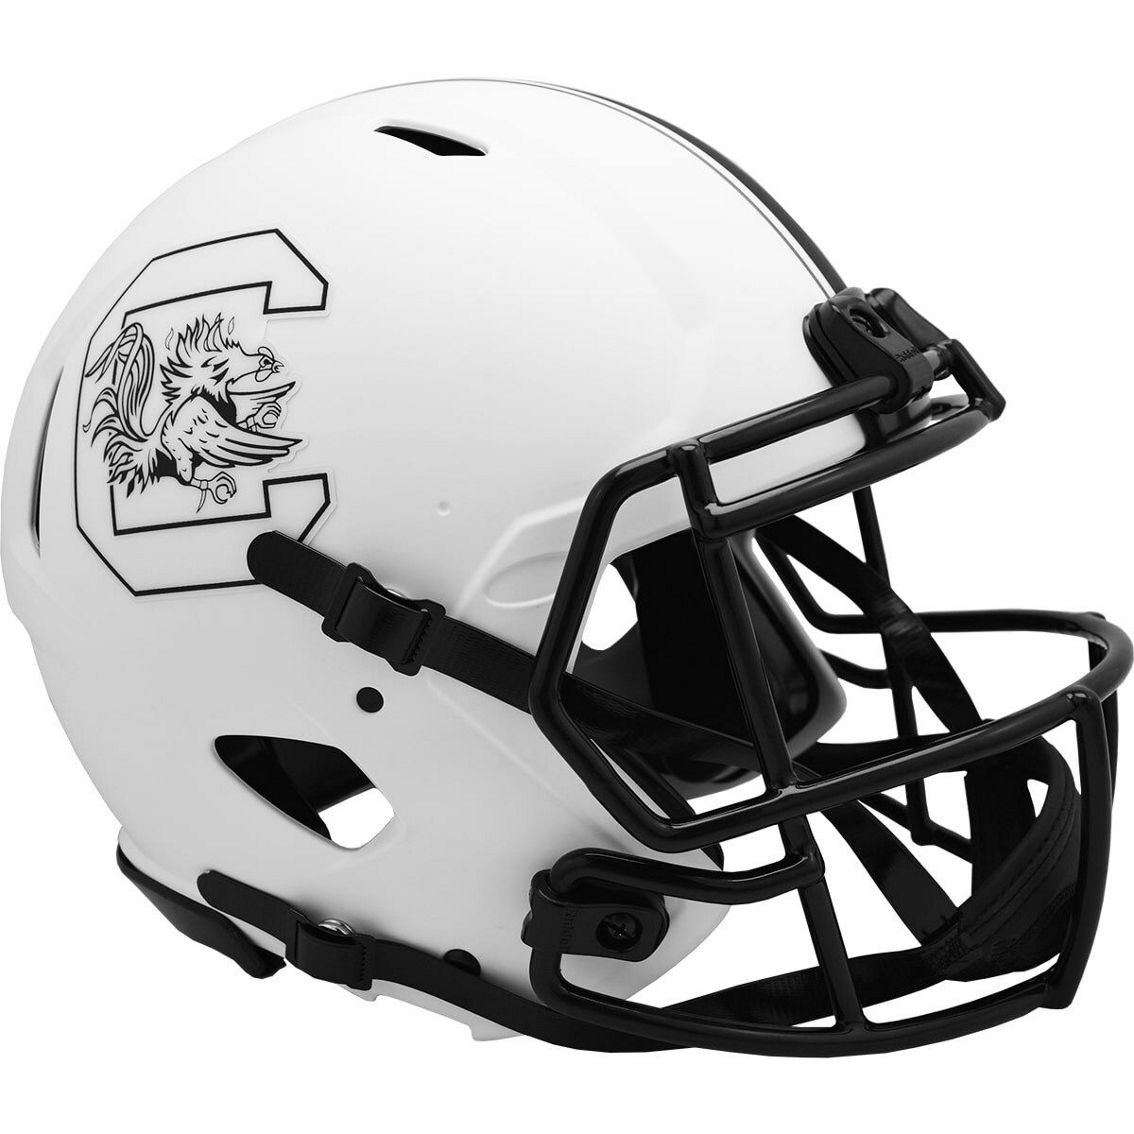 Riddell South Carolina Gamecocks Riddell LUNAR Alternate Revolution Speed Authentic Football Helmet - Image 2 of 2